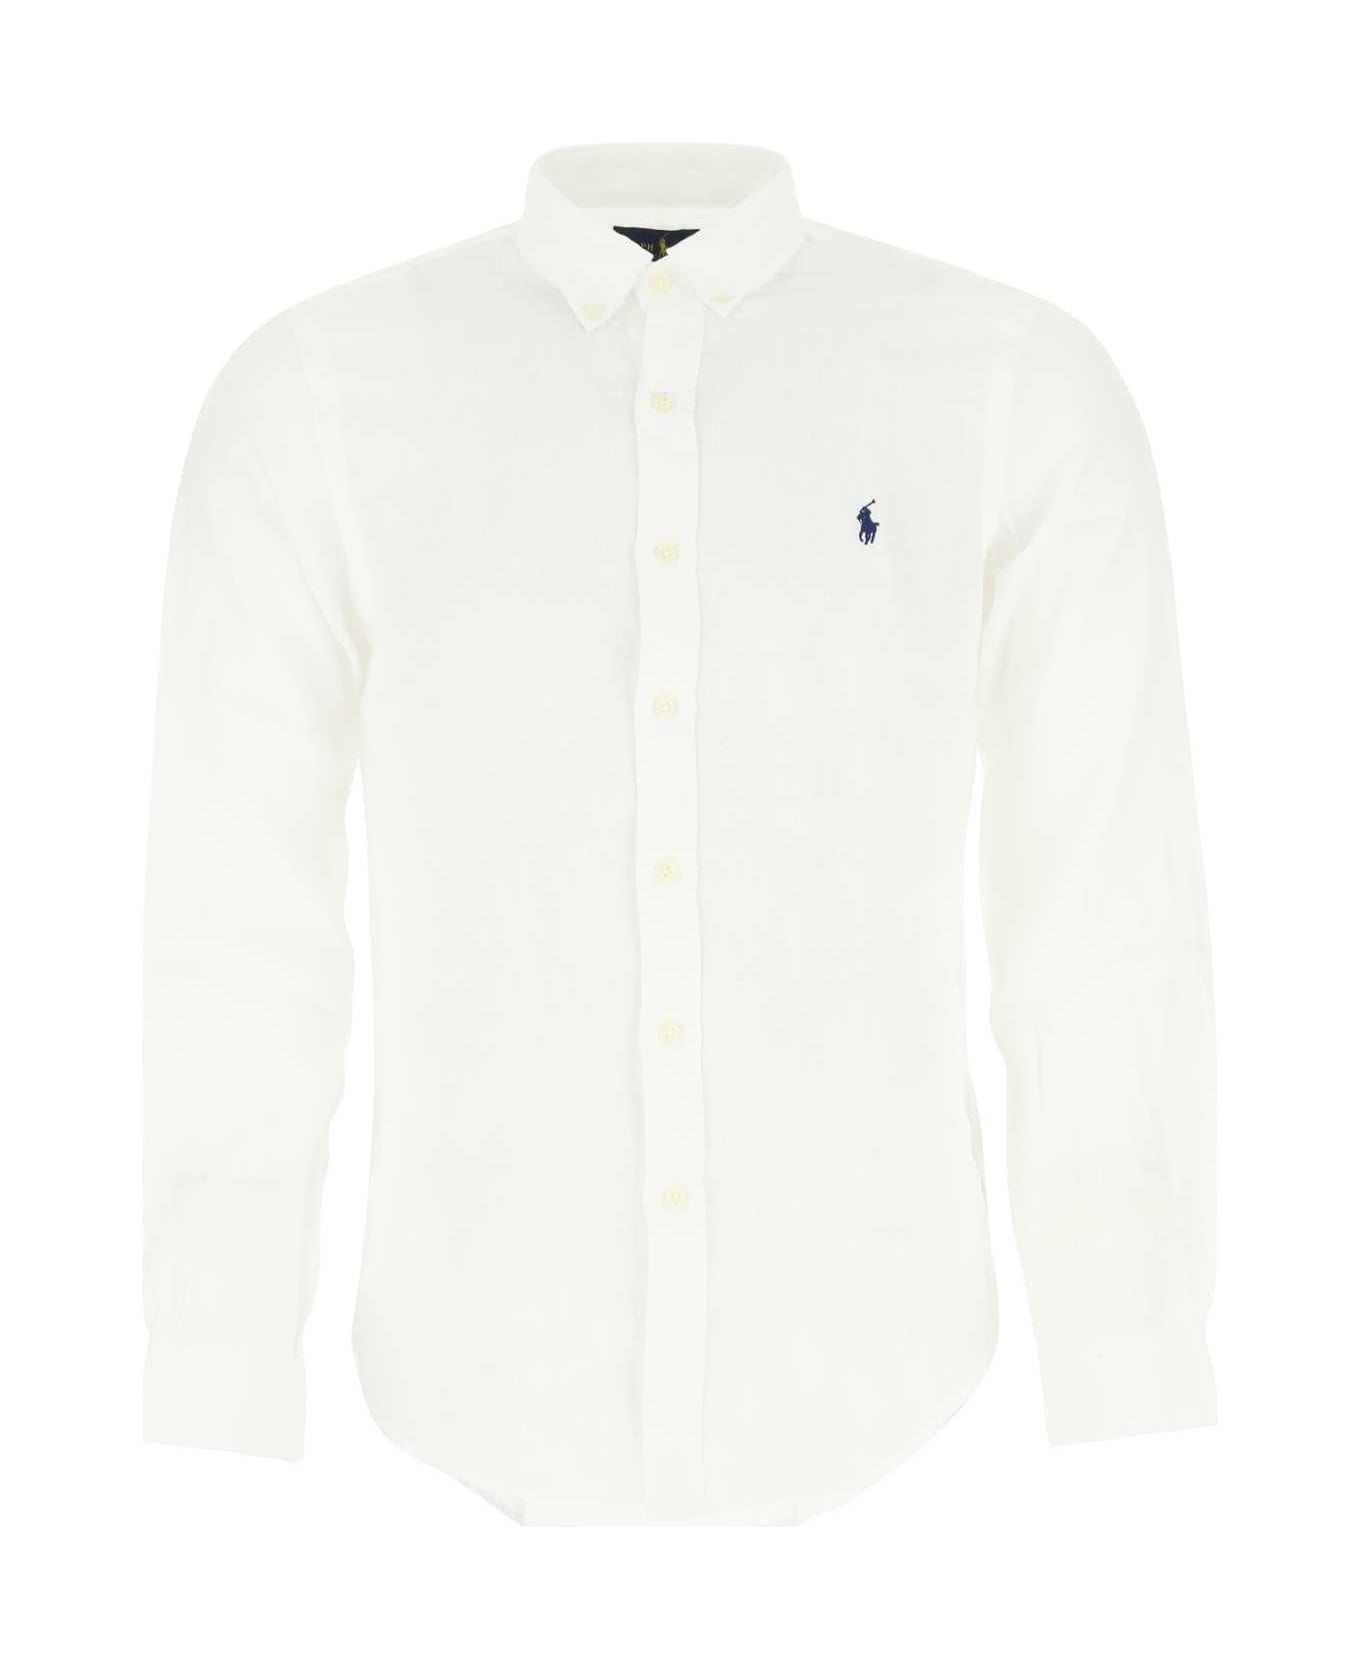 Polo Ralph Lauren White Linen Shirt - 002